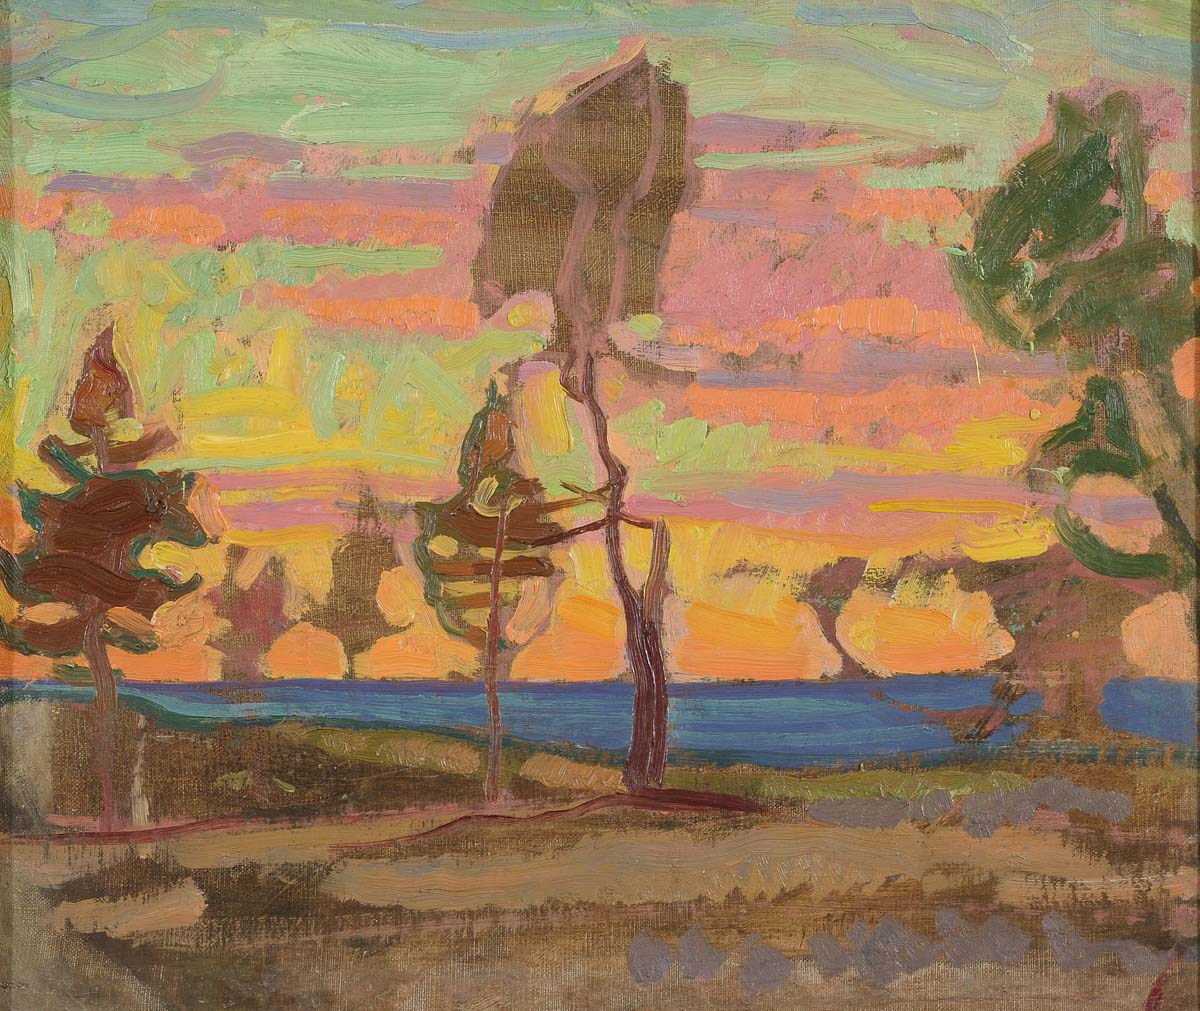 Nikolai Triik, Finnish Landscape, 1914